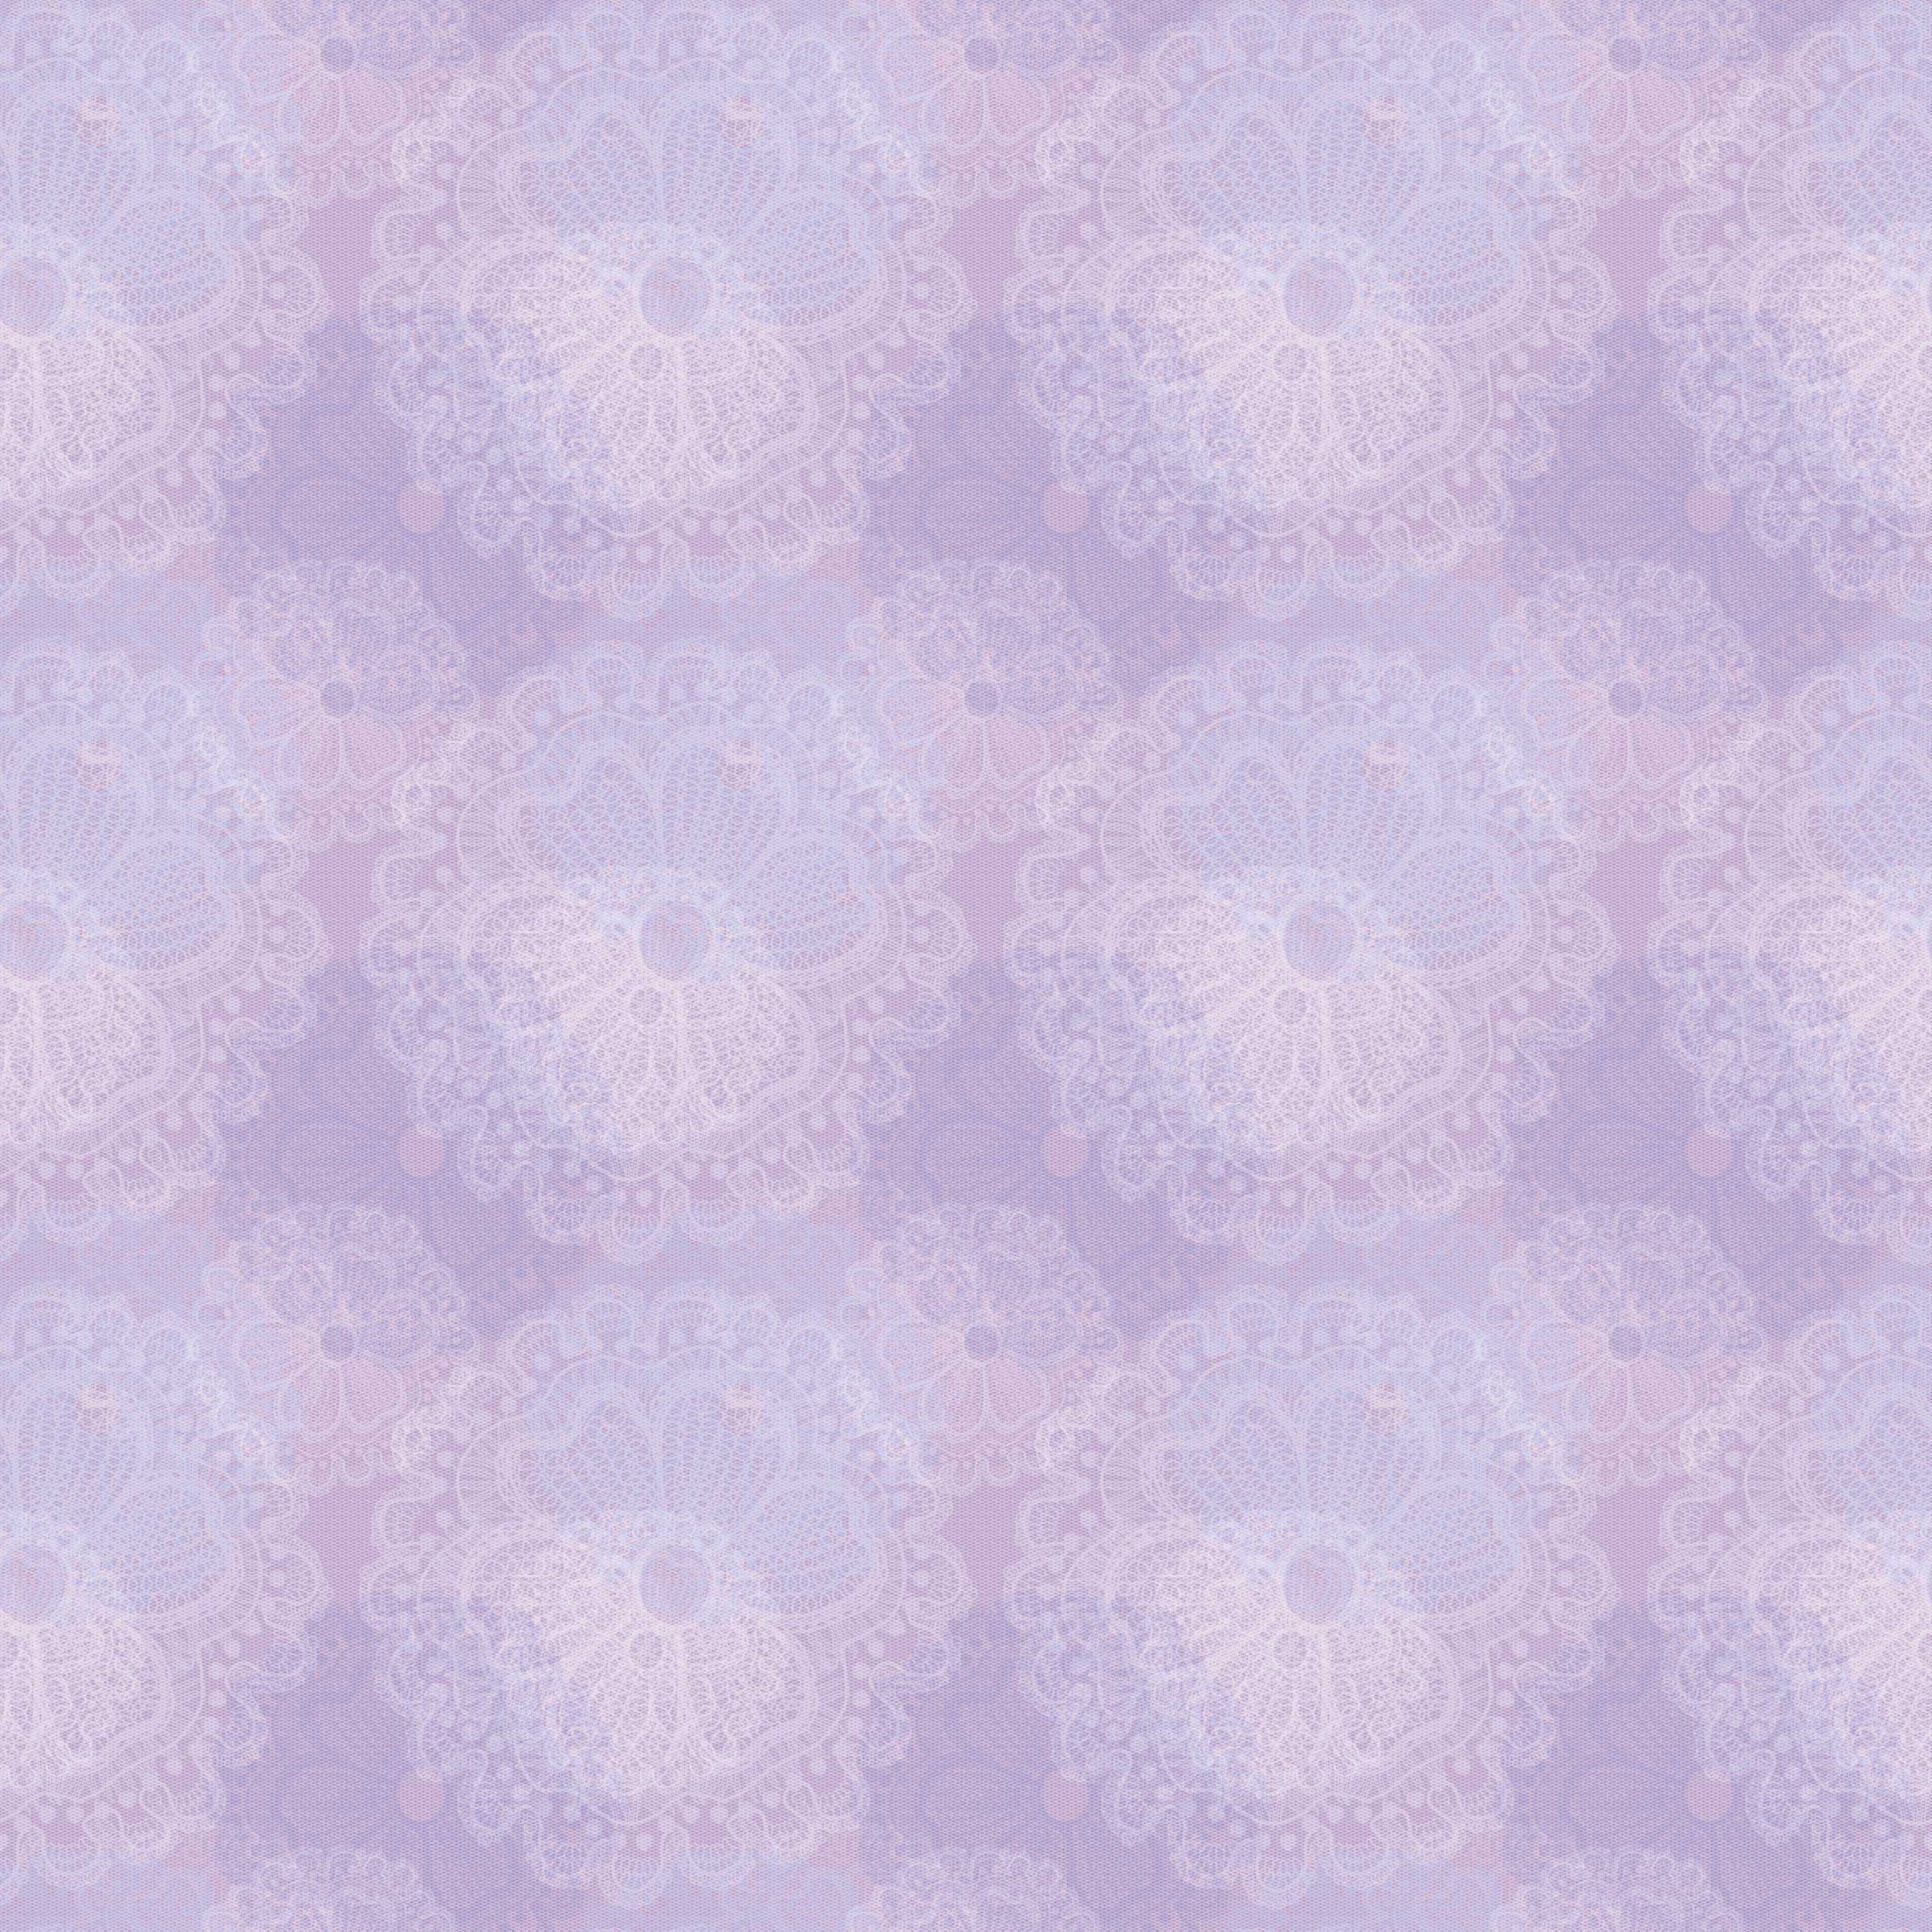 すべての花の画像 トップ100薄紫 壁紙